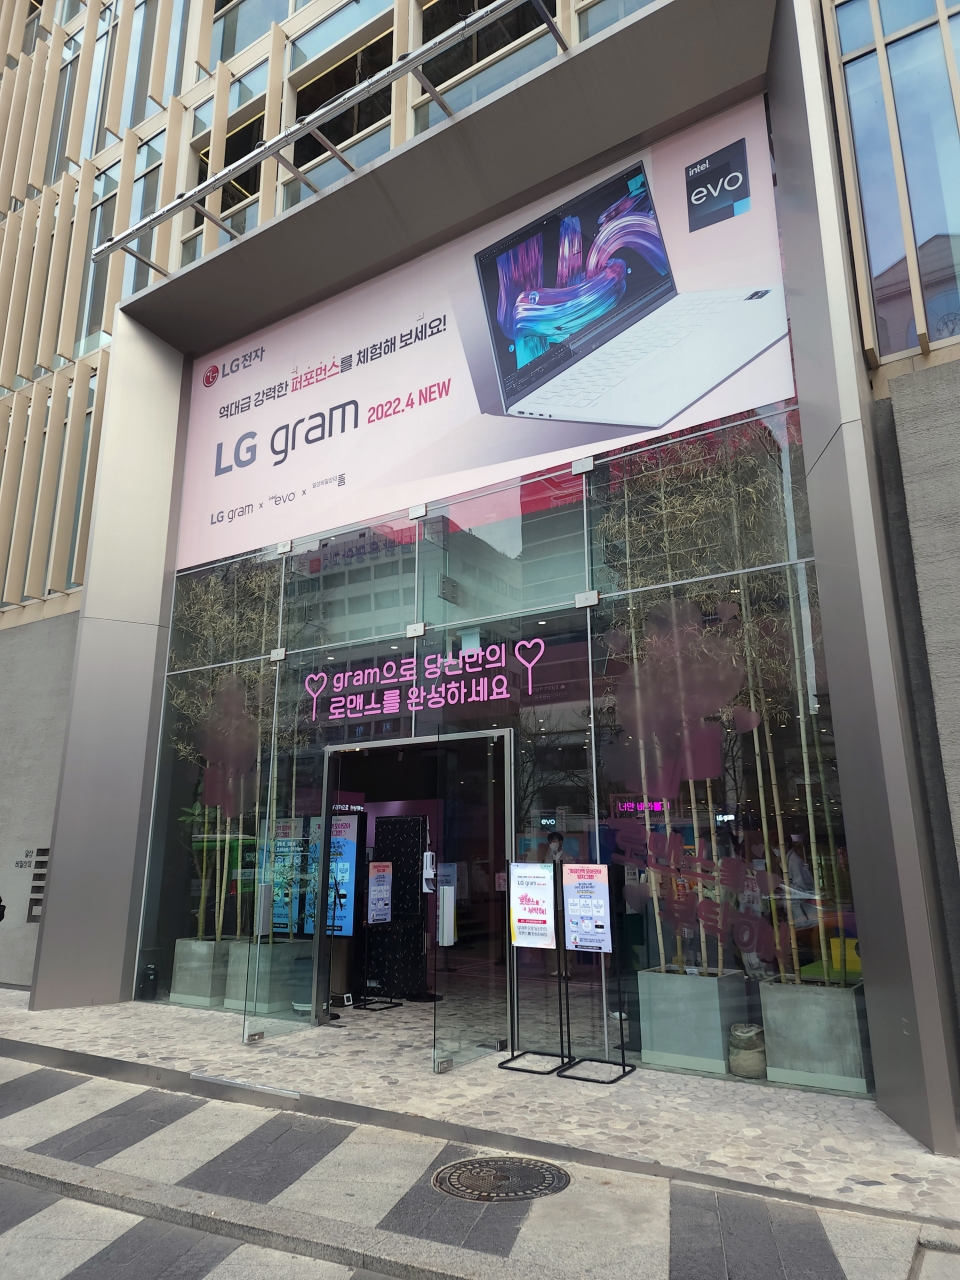 서울 강남역 부근 '일상비일상의틈'에서 새로운 2022 LG 그램을 만나볼 수 있다.